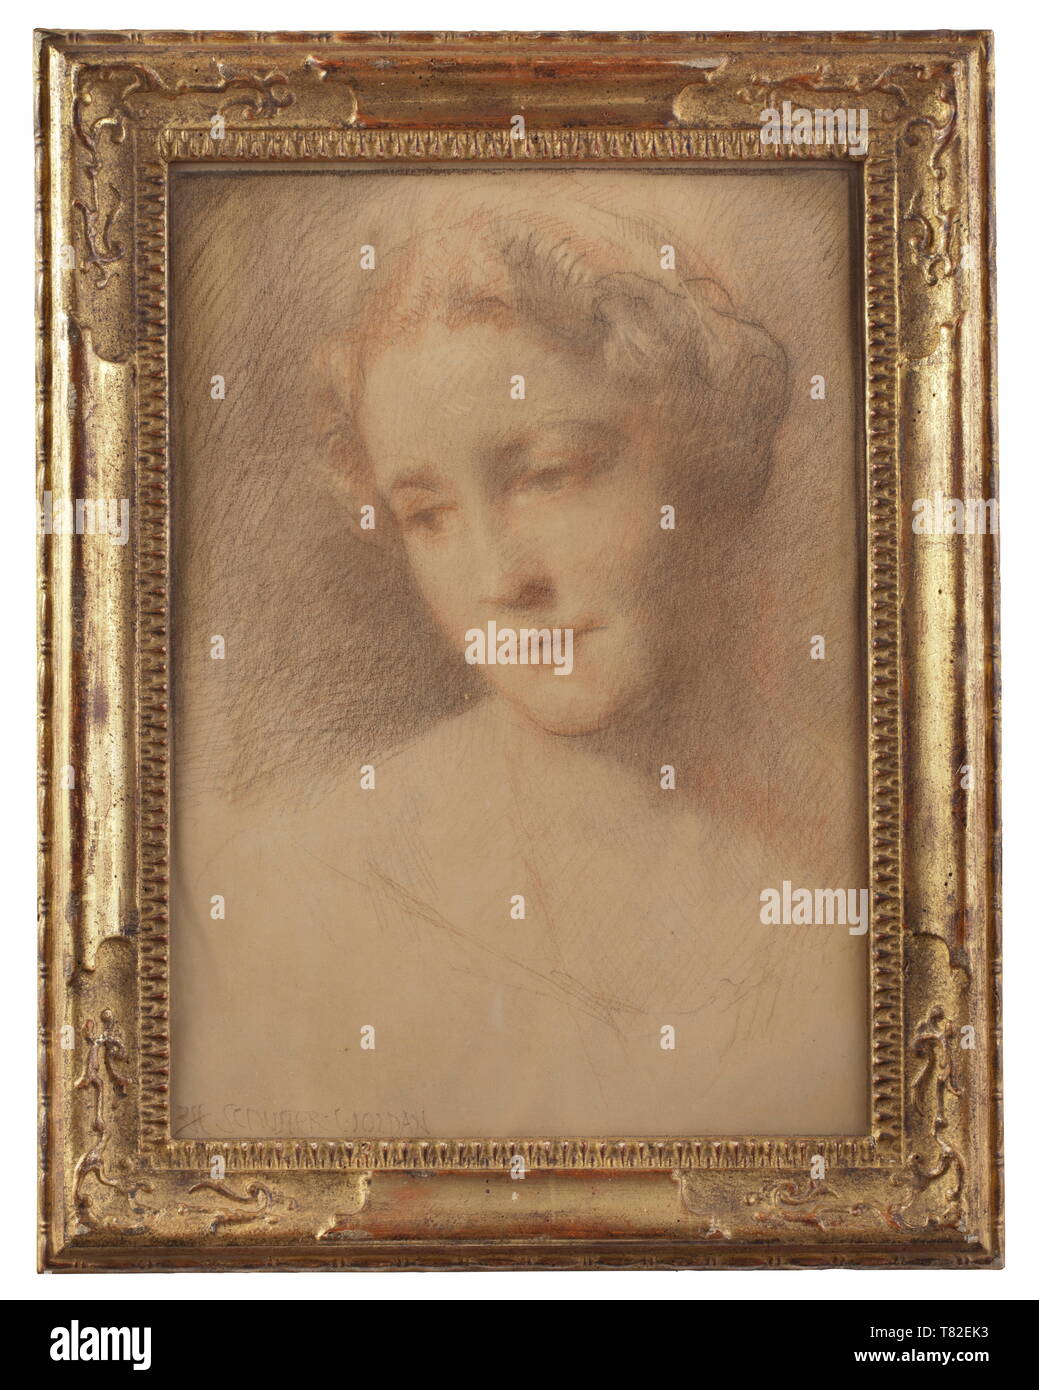 Raffael Schuster-Woldan (1870 - 1951) - portrait d'un Emmy Göring craie rouge et noir sur papier, signé en bas à gauche 'RFF. Schuster-Woldan'. Idéalement image peinte, la tête de Mme Göring était tourné vers la gauche. Dans le cadre d'or texturé contemporain, l'arrière est inscrit le nombre '15792/6'. Avec châssis de taille 53,3 x 41,3 cm. Raffael Schuster-Woldan, né à Striegau (Silésie) en 1870, a étudié à Munich et Francfort, est co-fondateur de la Sécession de Munich en 1893, professeur à l'Académie prussienne des beaux-arts de Berlin de 1911 - 1920, peint le Editorial-Use m, seule Banque D'Images